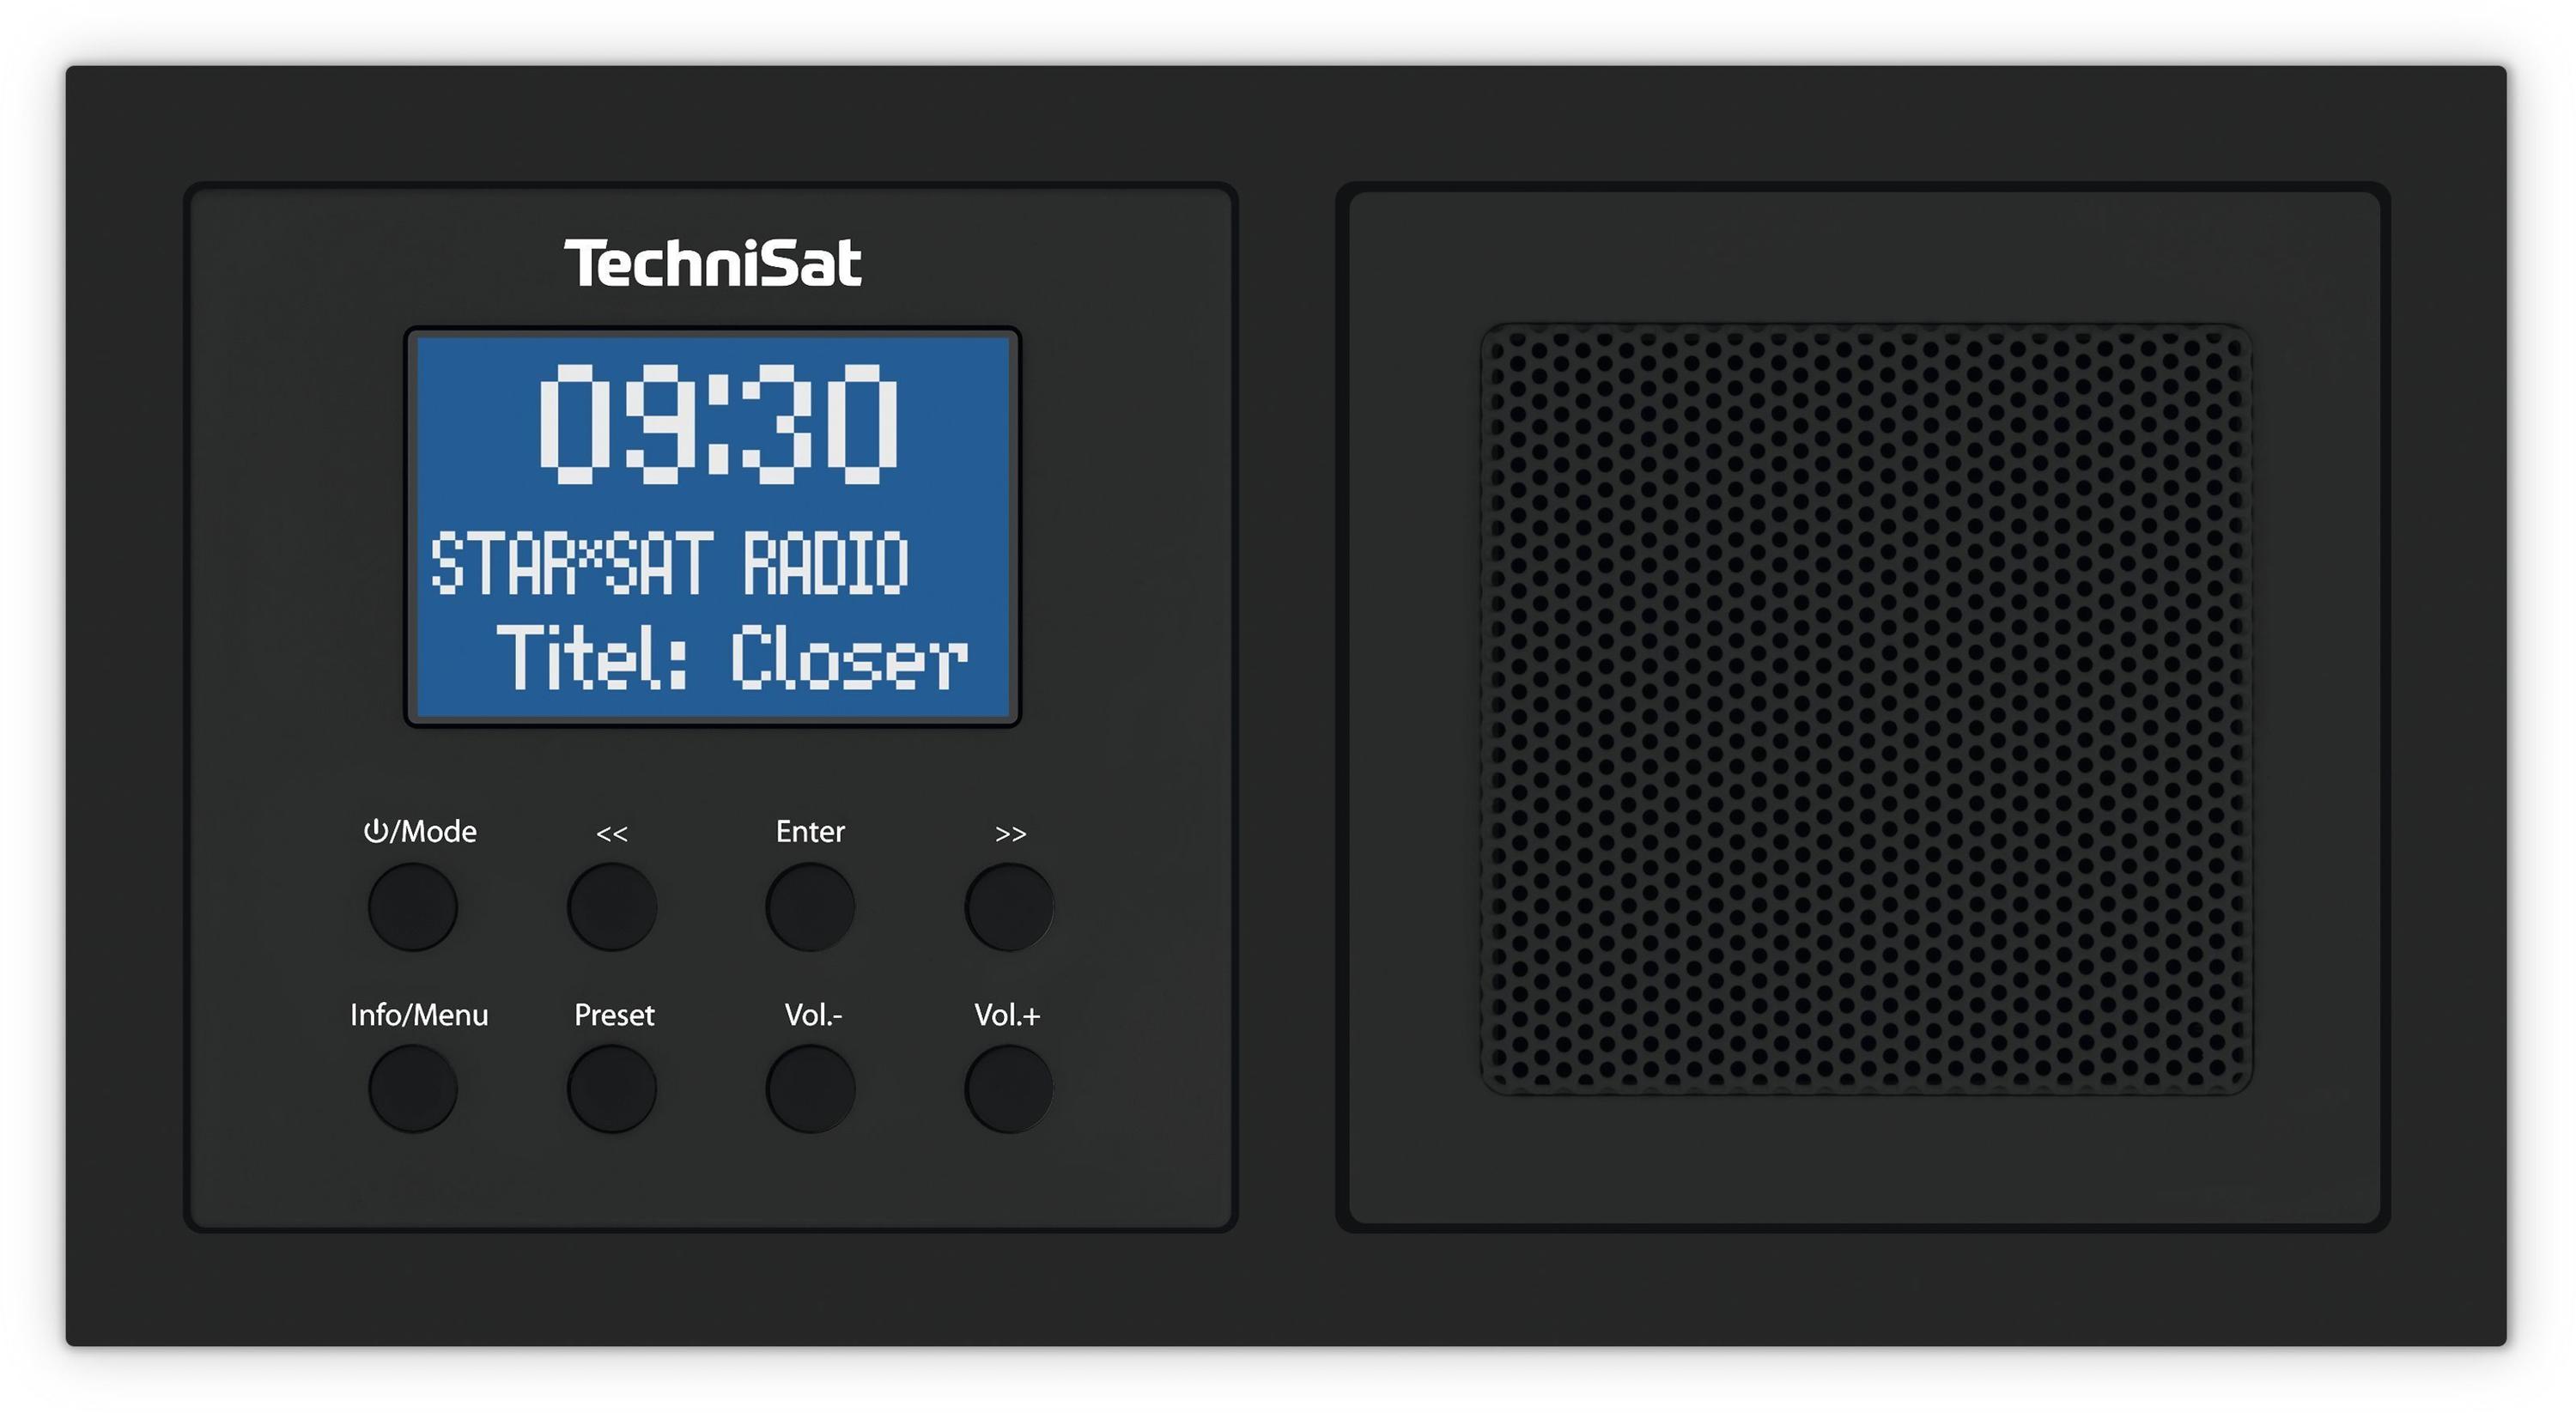 TechniSat DigitRadio UP 1 schwarz Test - ab 93,95 €